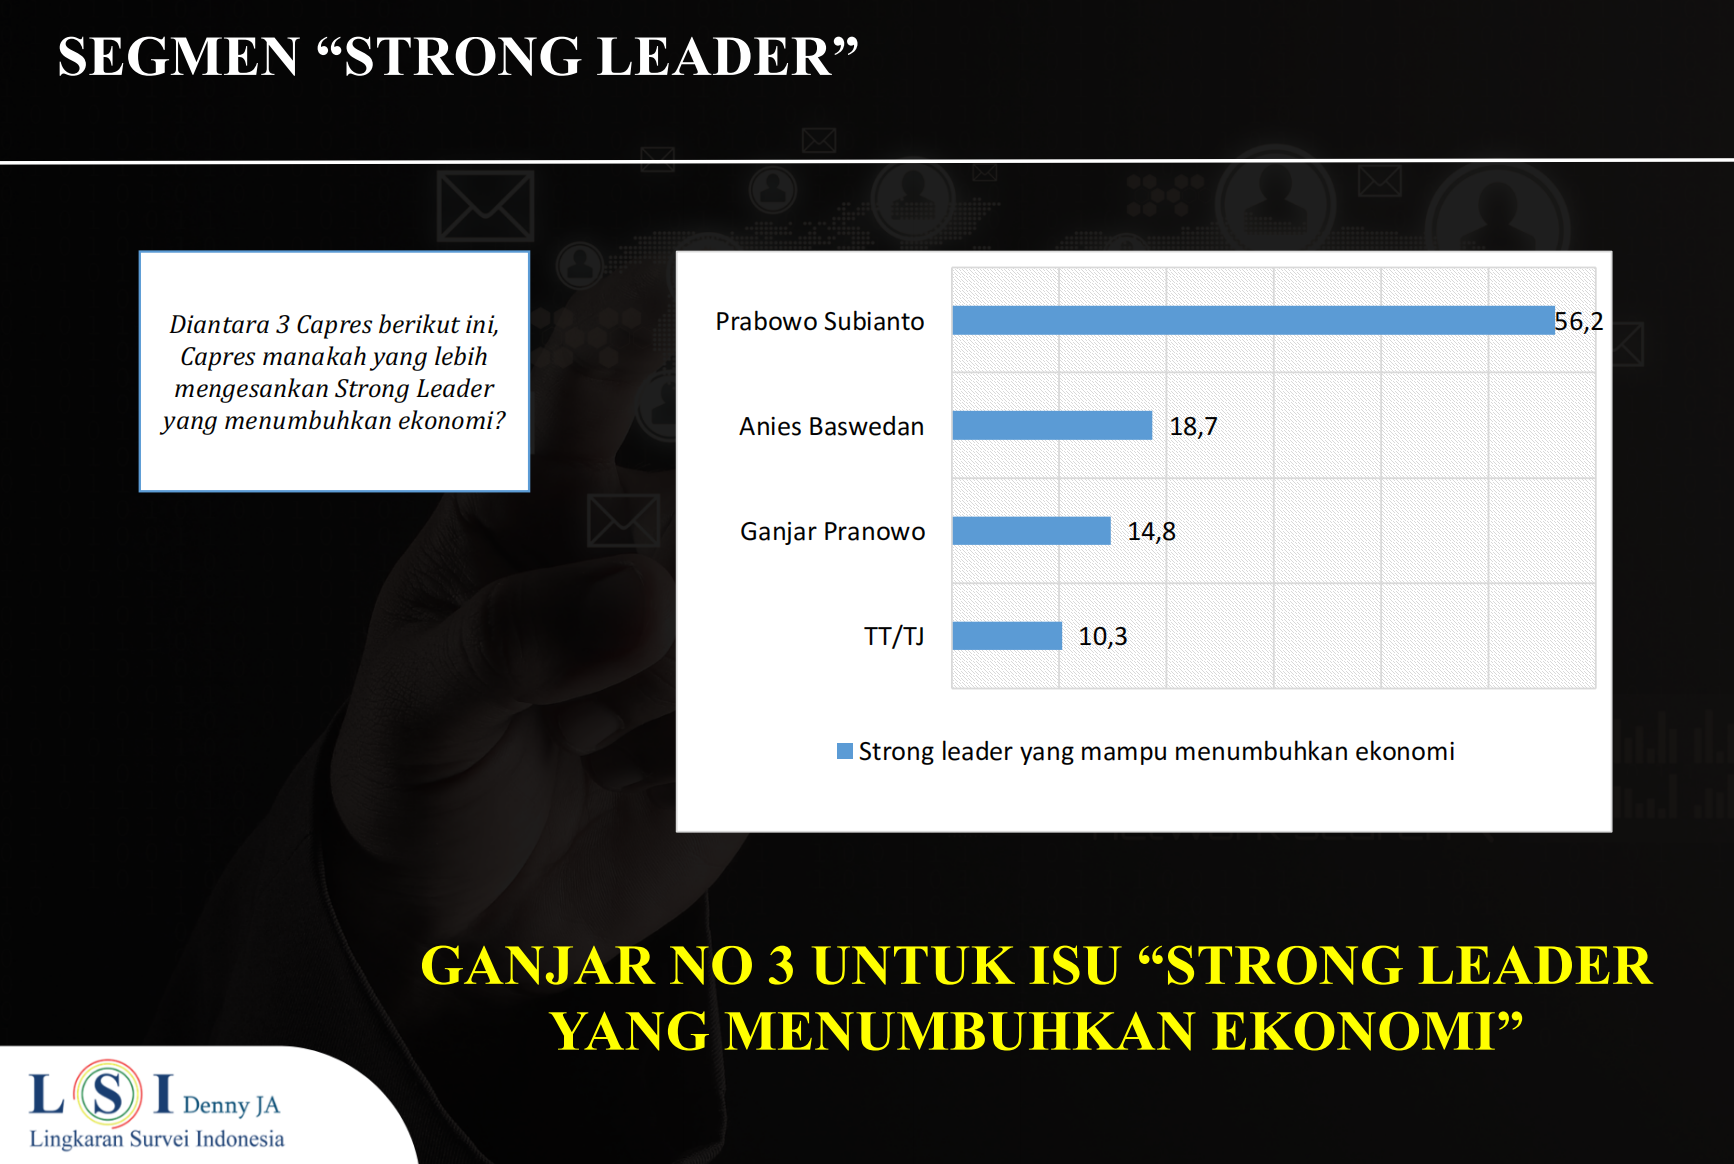 Setelah pandemi kebutuhan strong leader untuk menumbuhkan ekonomi tinggi sekali. Mencapai 85,6 persen.